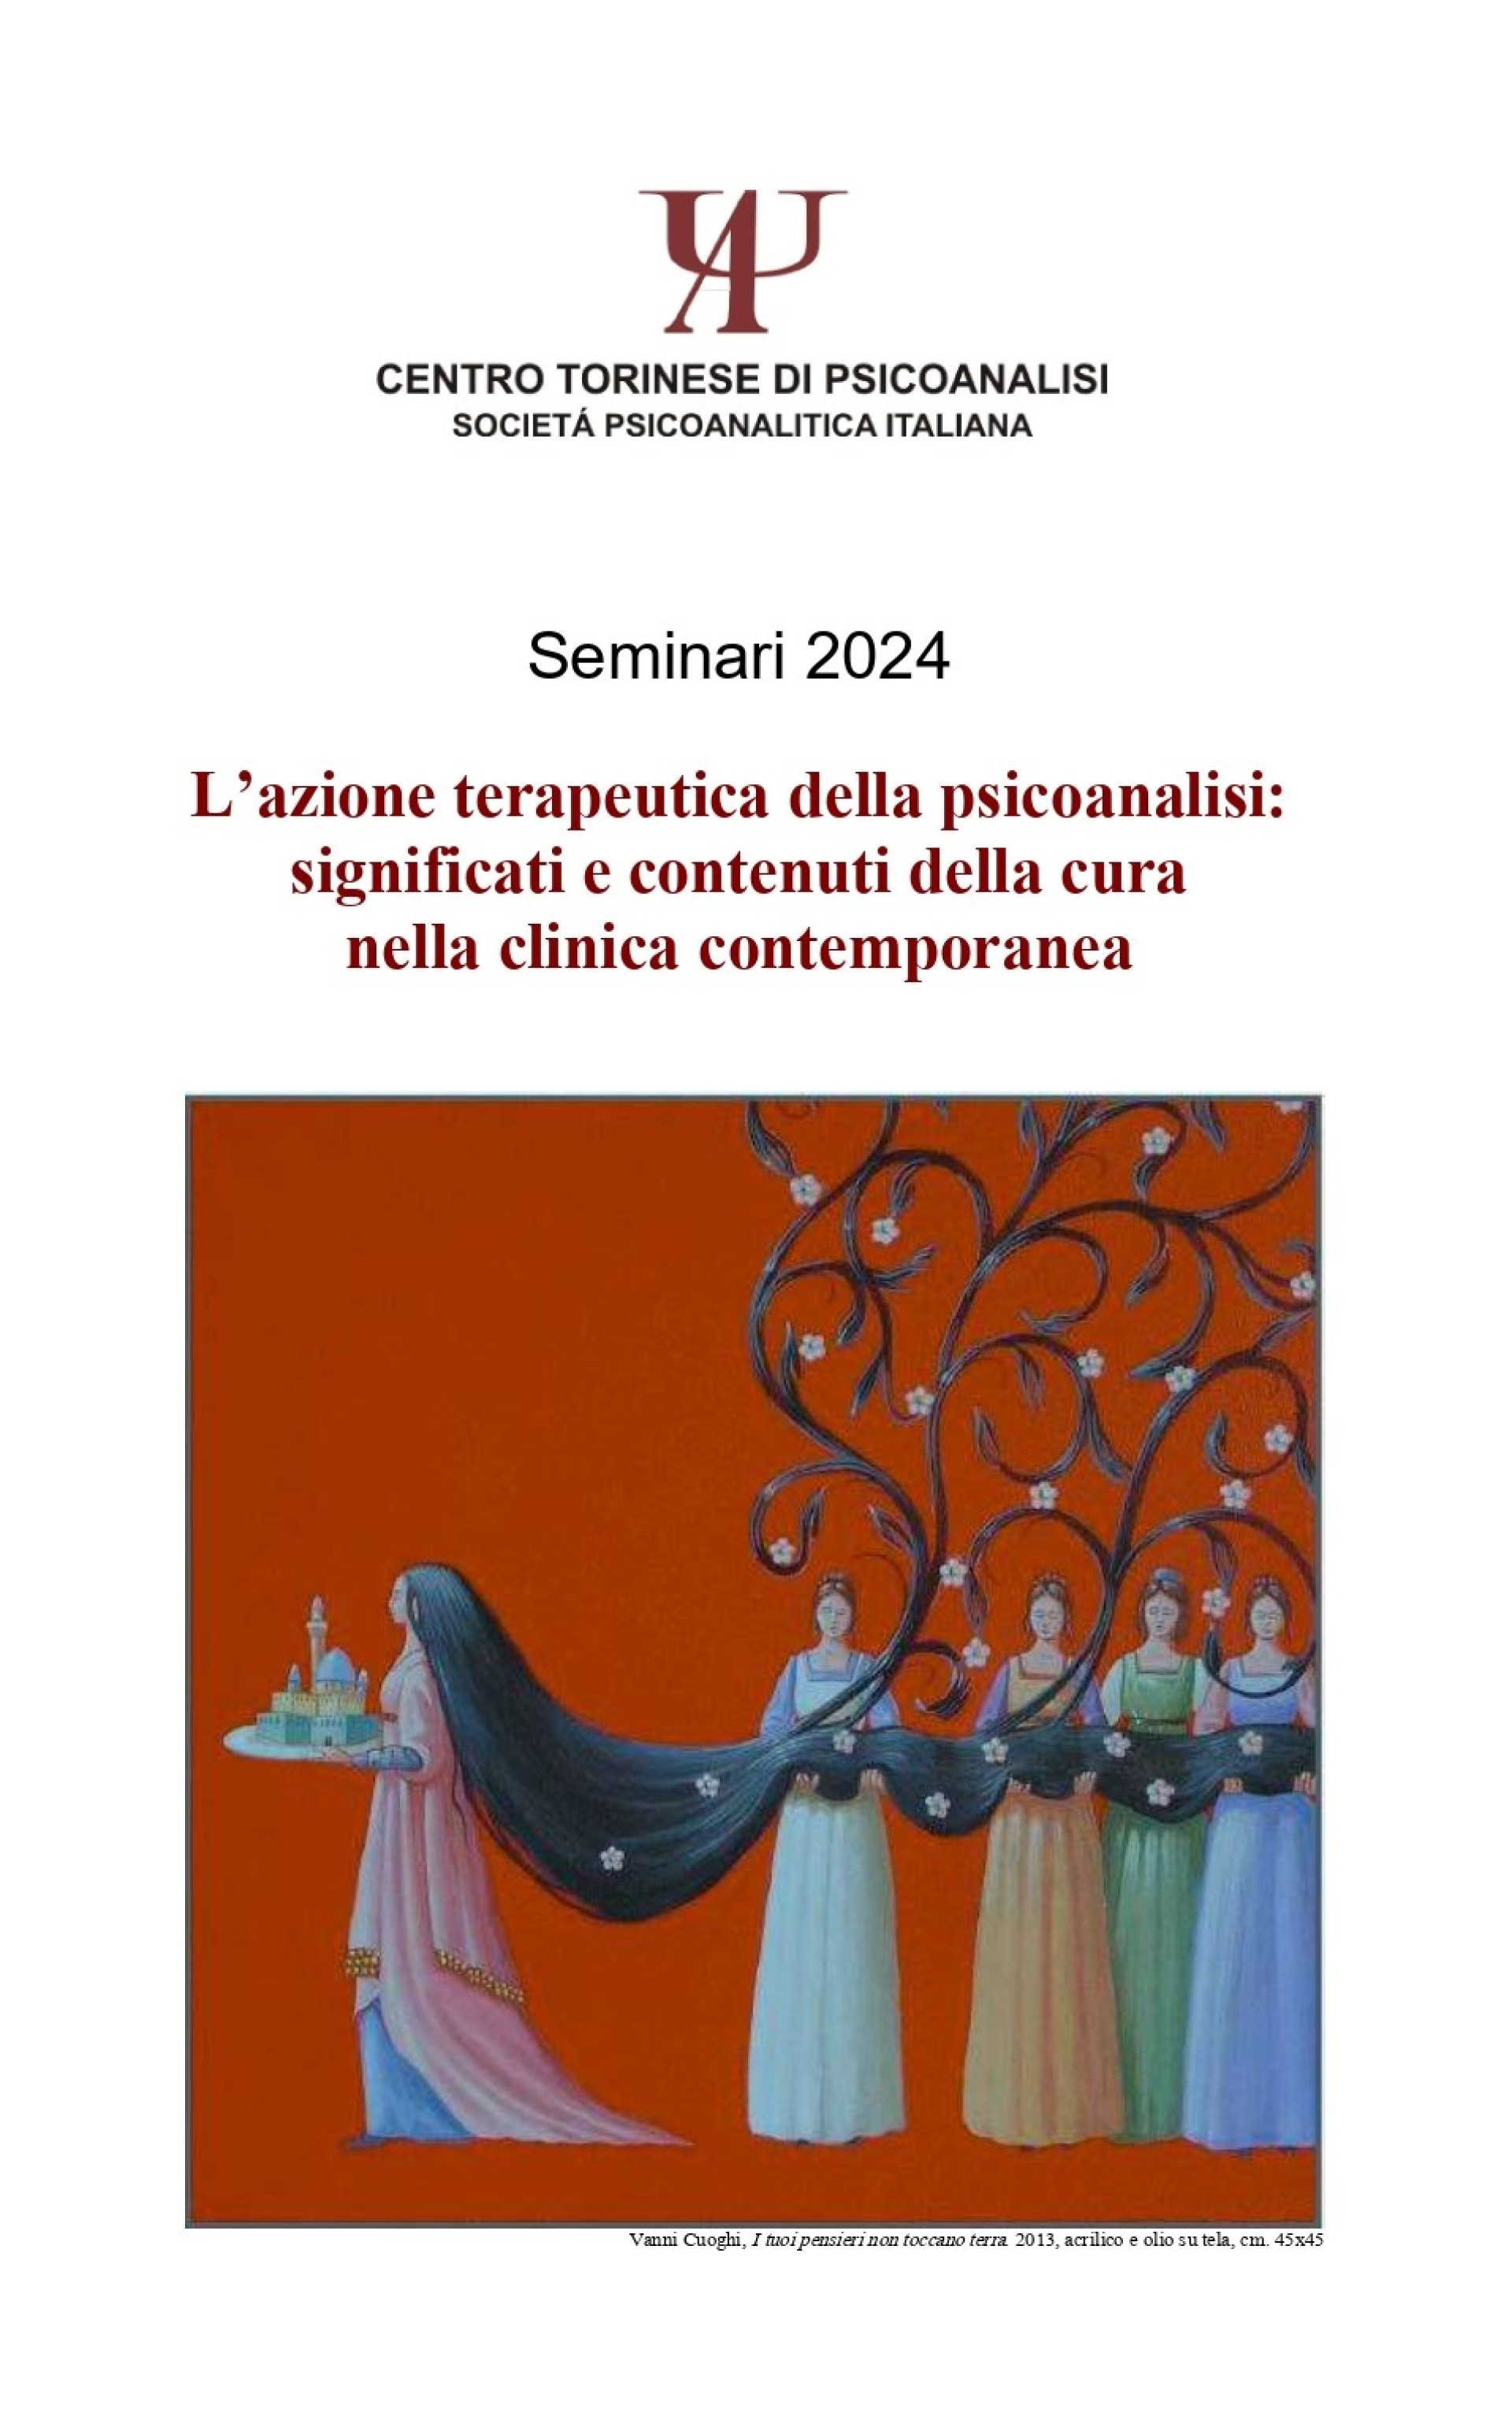 Sabato 20 aprile 2024 - L’azione terapeutica della psicoanalisi: significati e contenuti della cura nella clinica contemporanea con Tiziana Bastianini (CPdR)